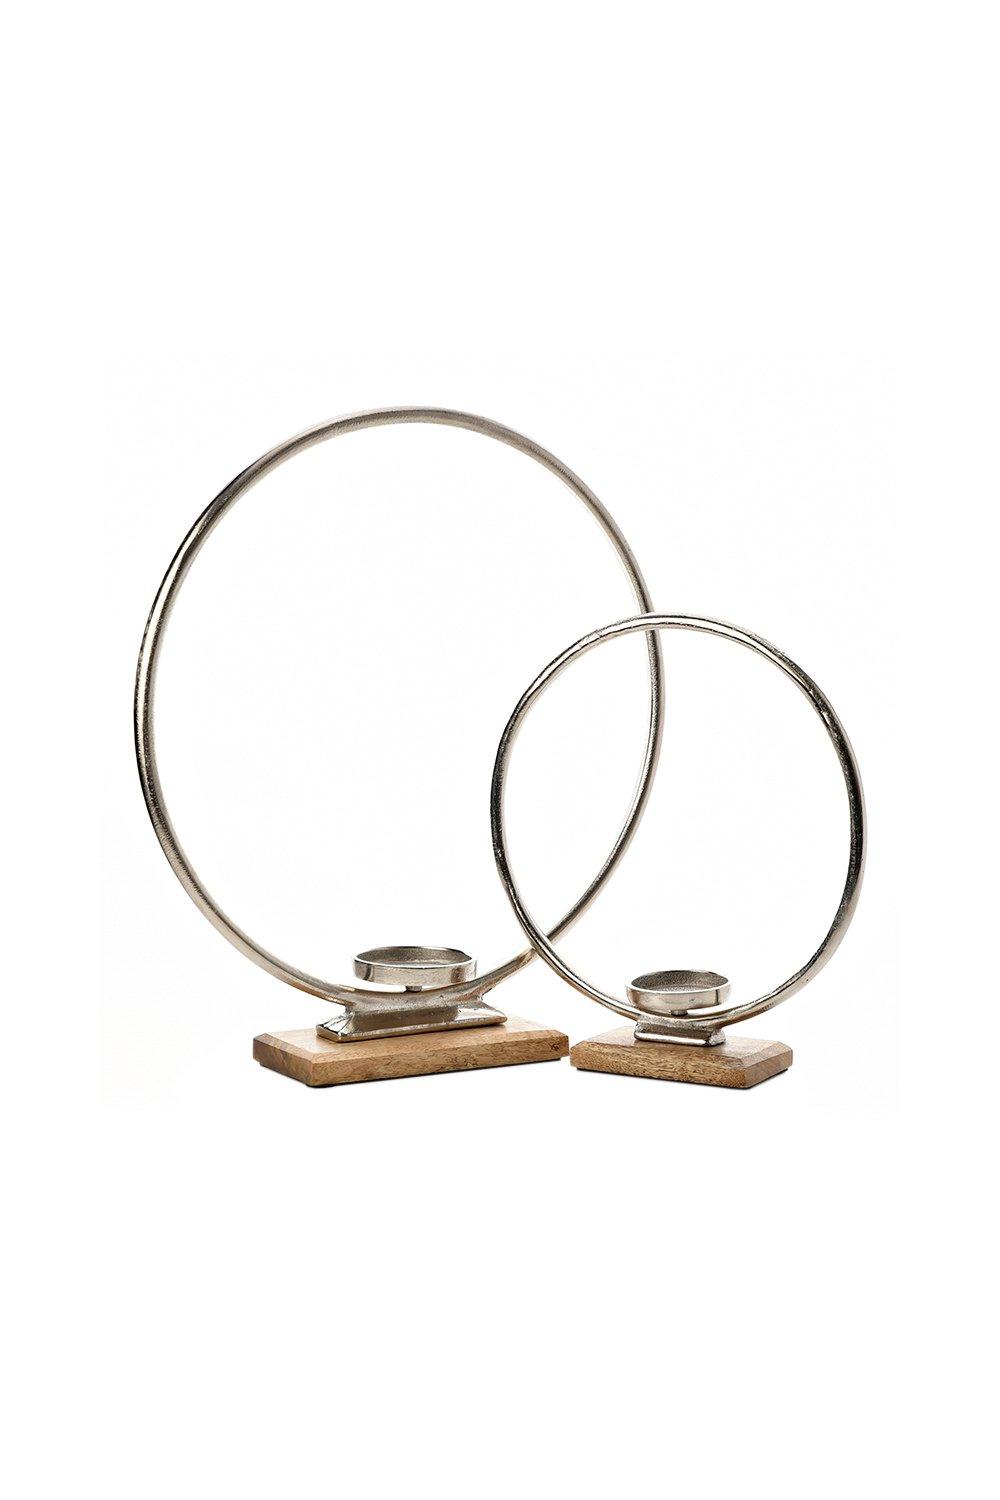 Hestia Set of 2 Metal Hoop Tealight Holders 30cm & 43cm|metallic silver